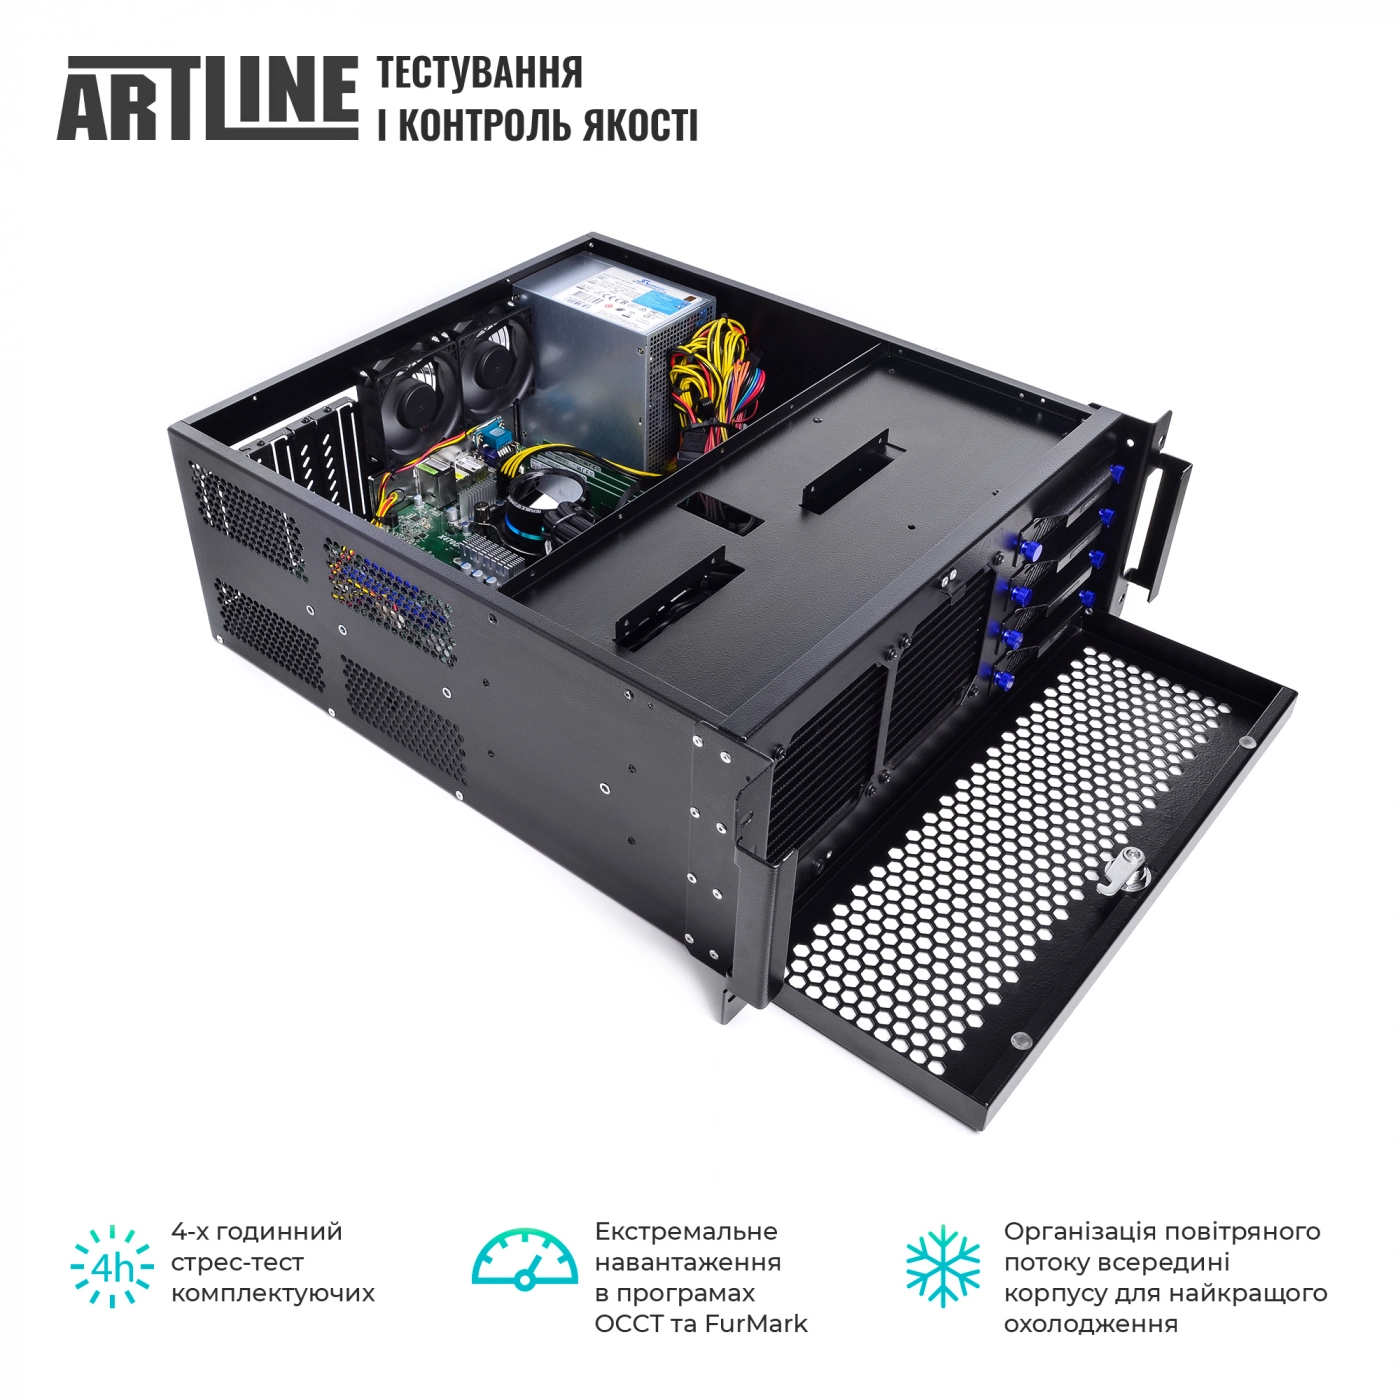 Купить Сервер ARTLINE Business R65v02 - фото 5